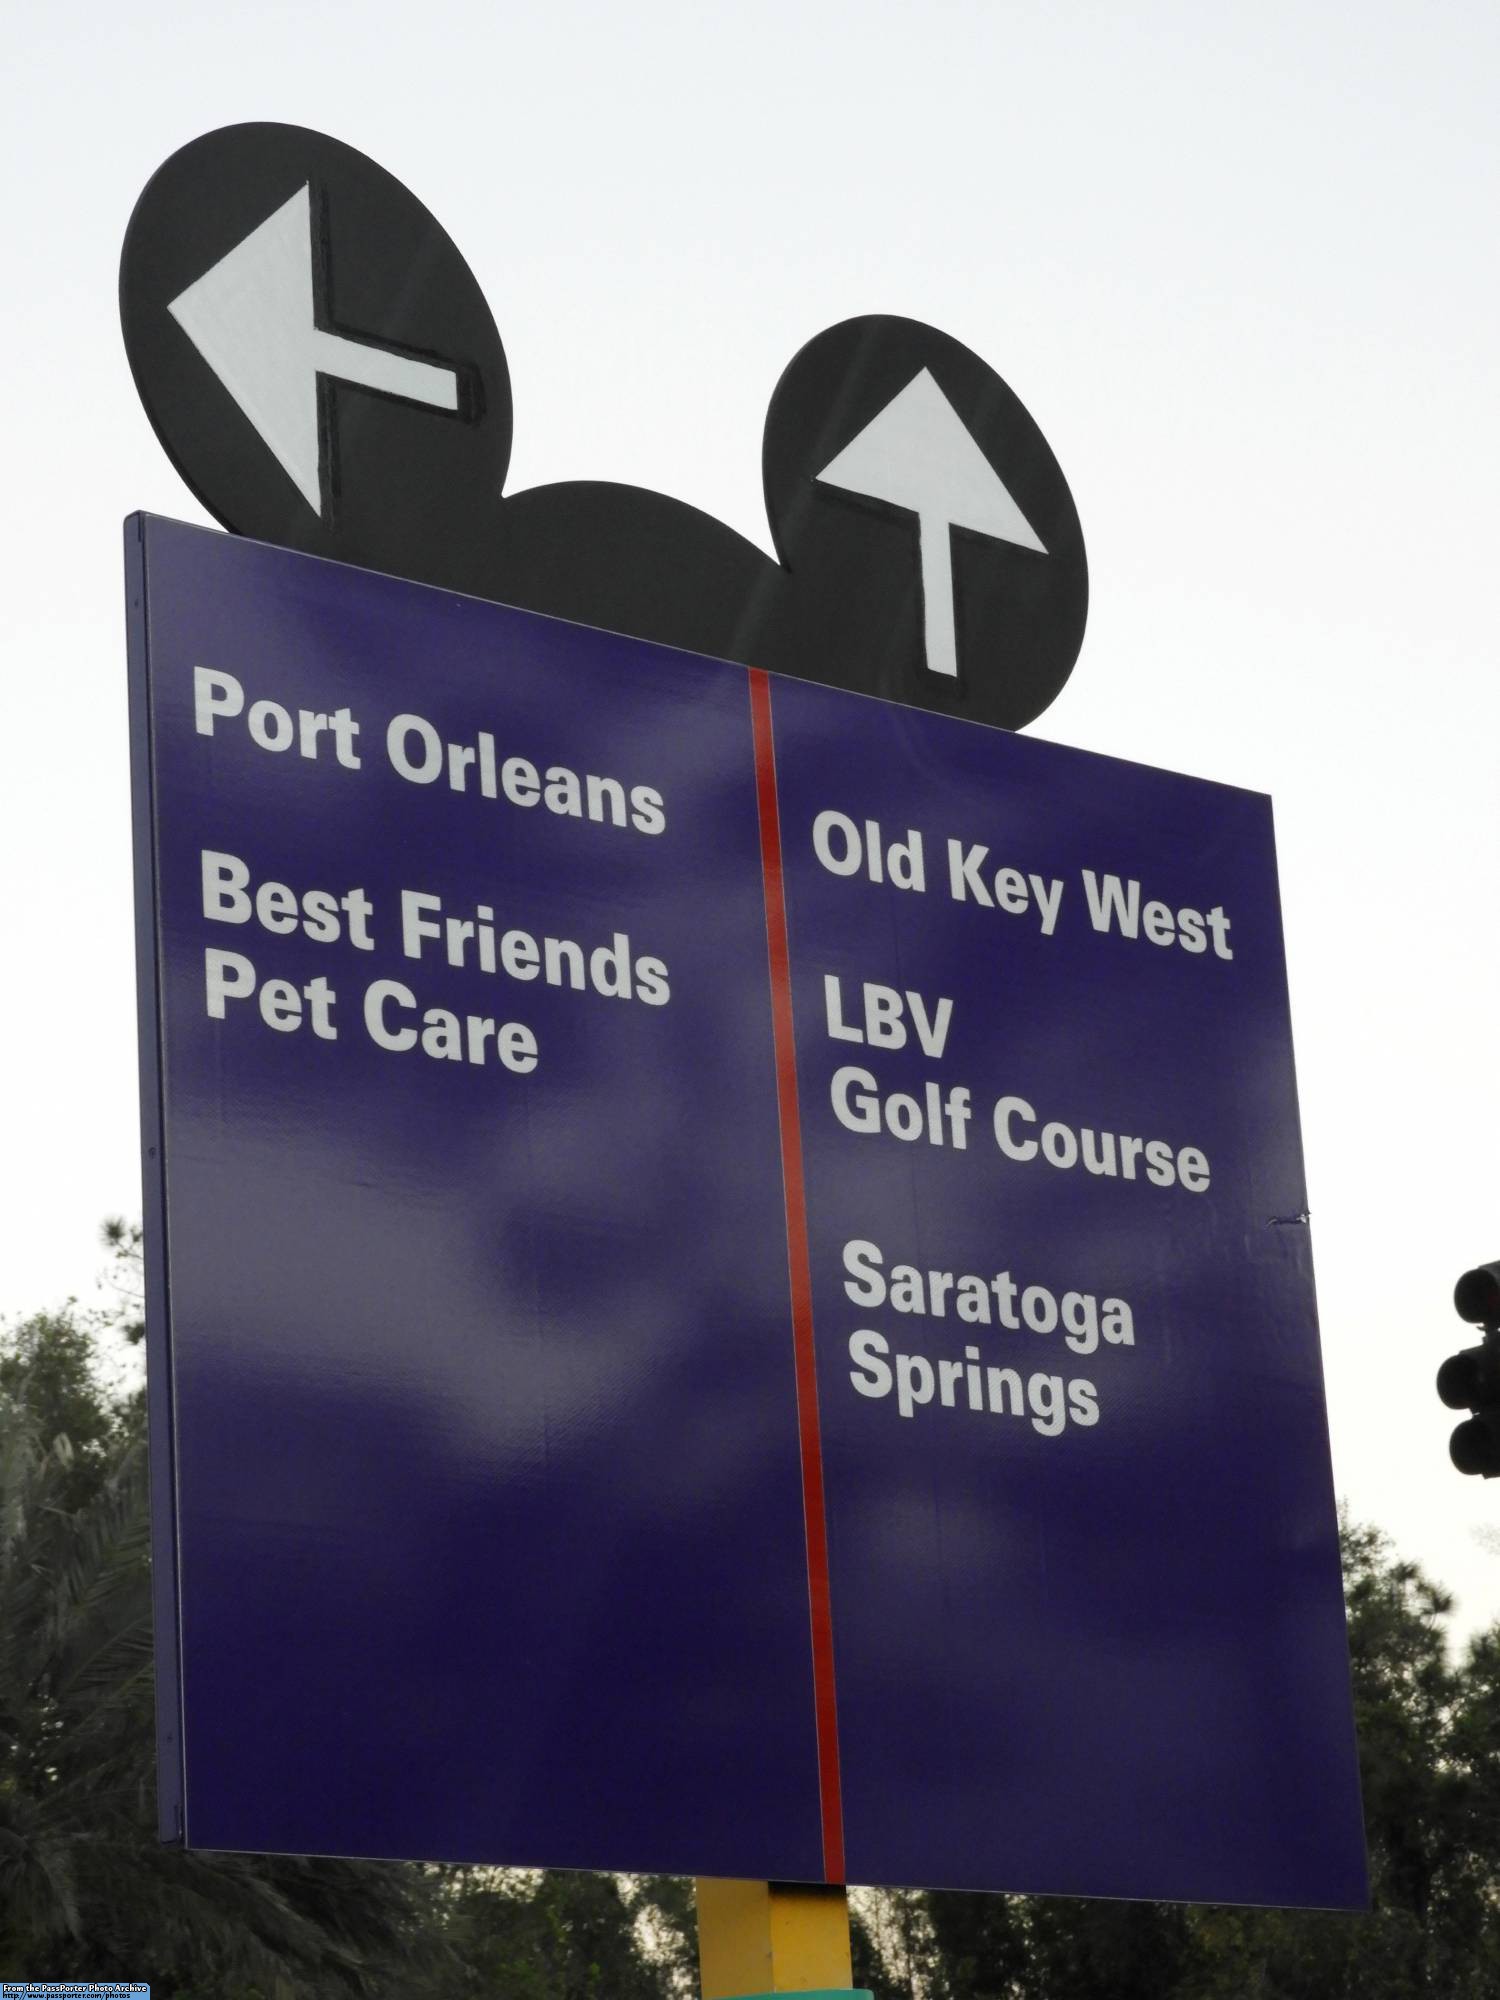 Old Key West - signage